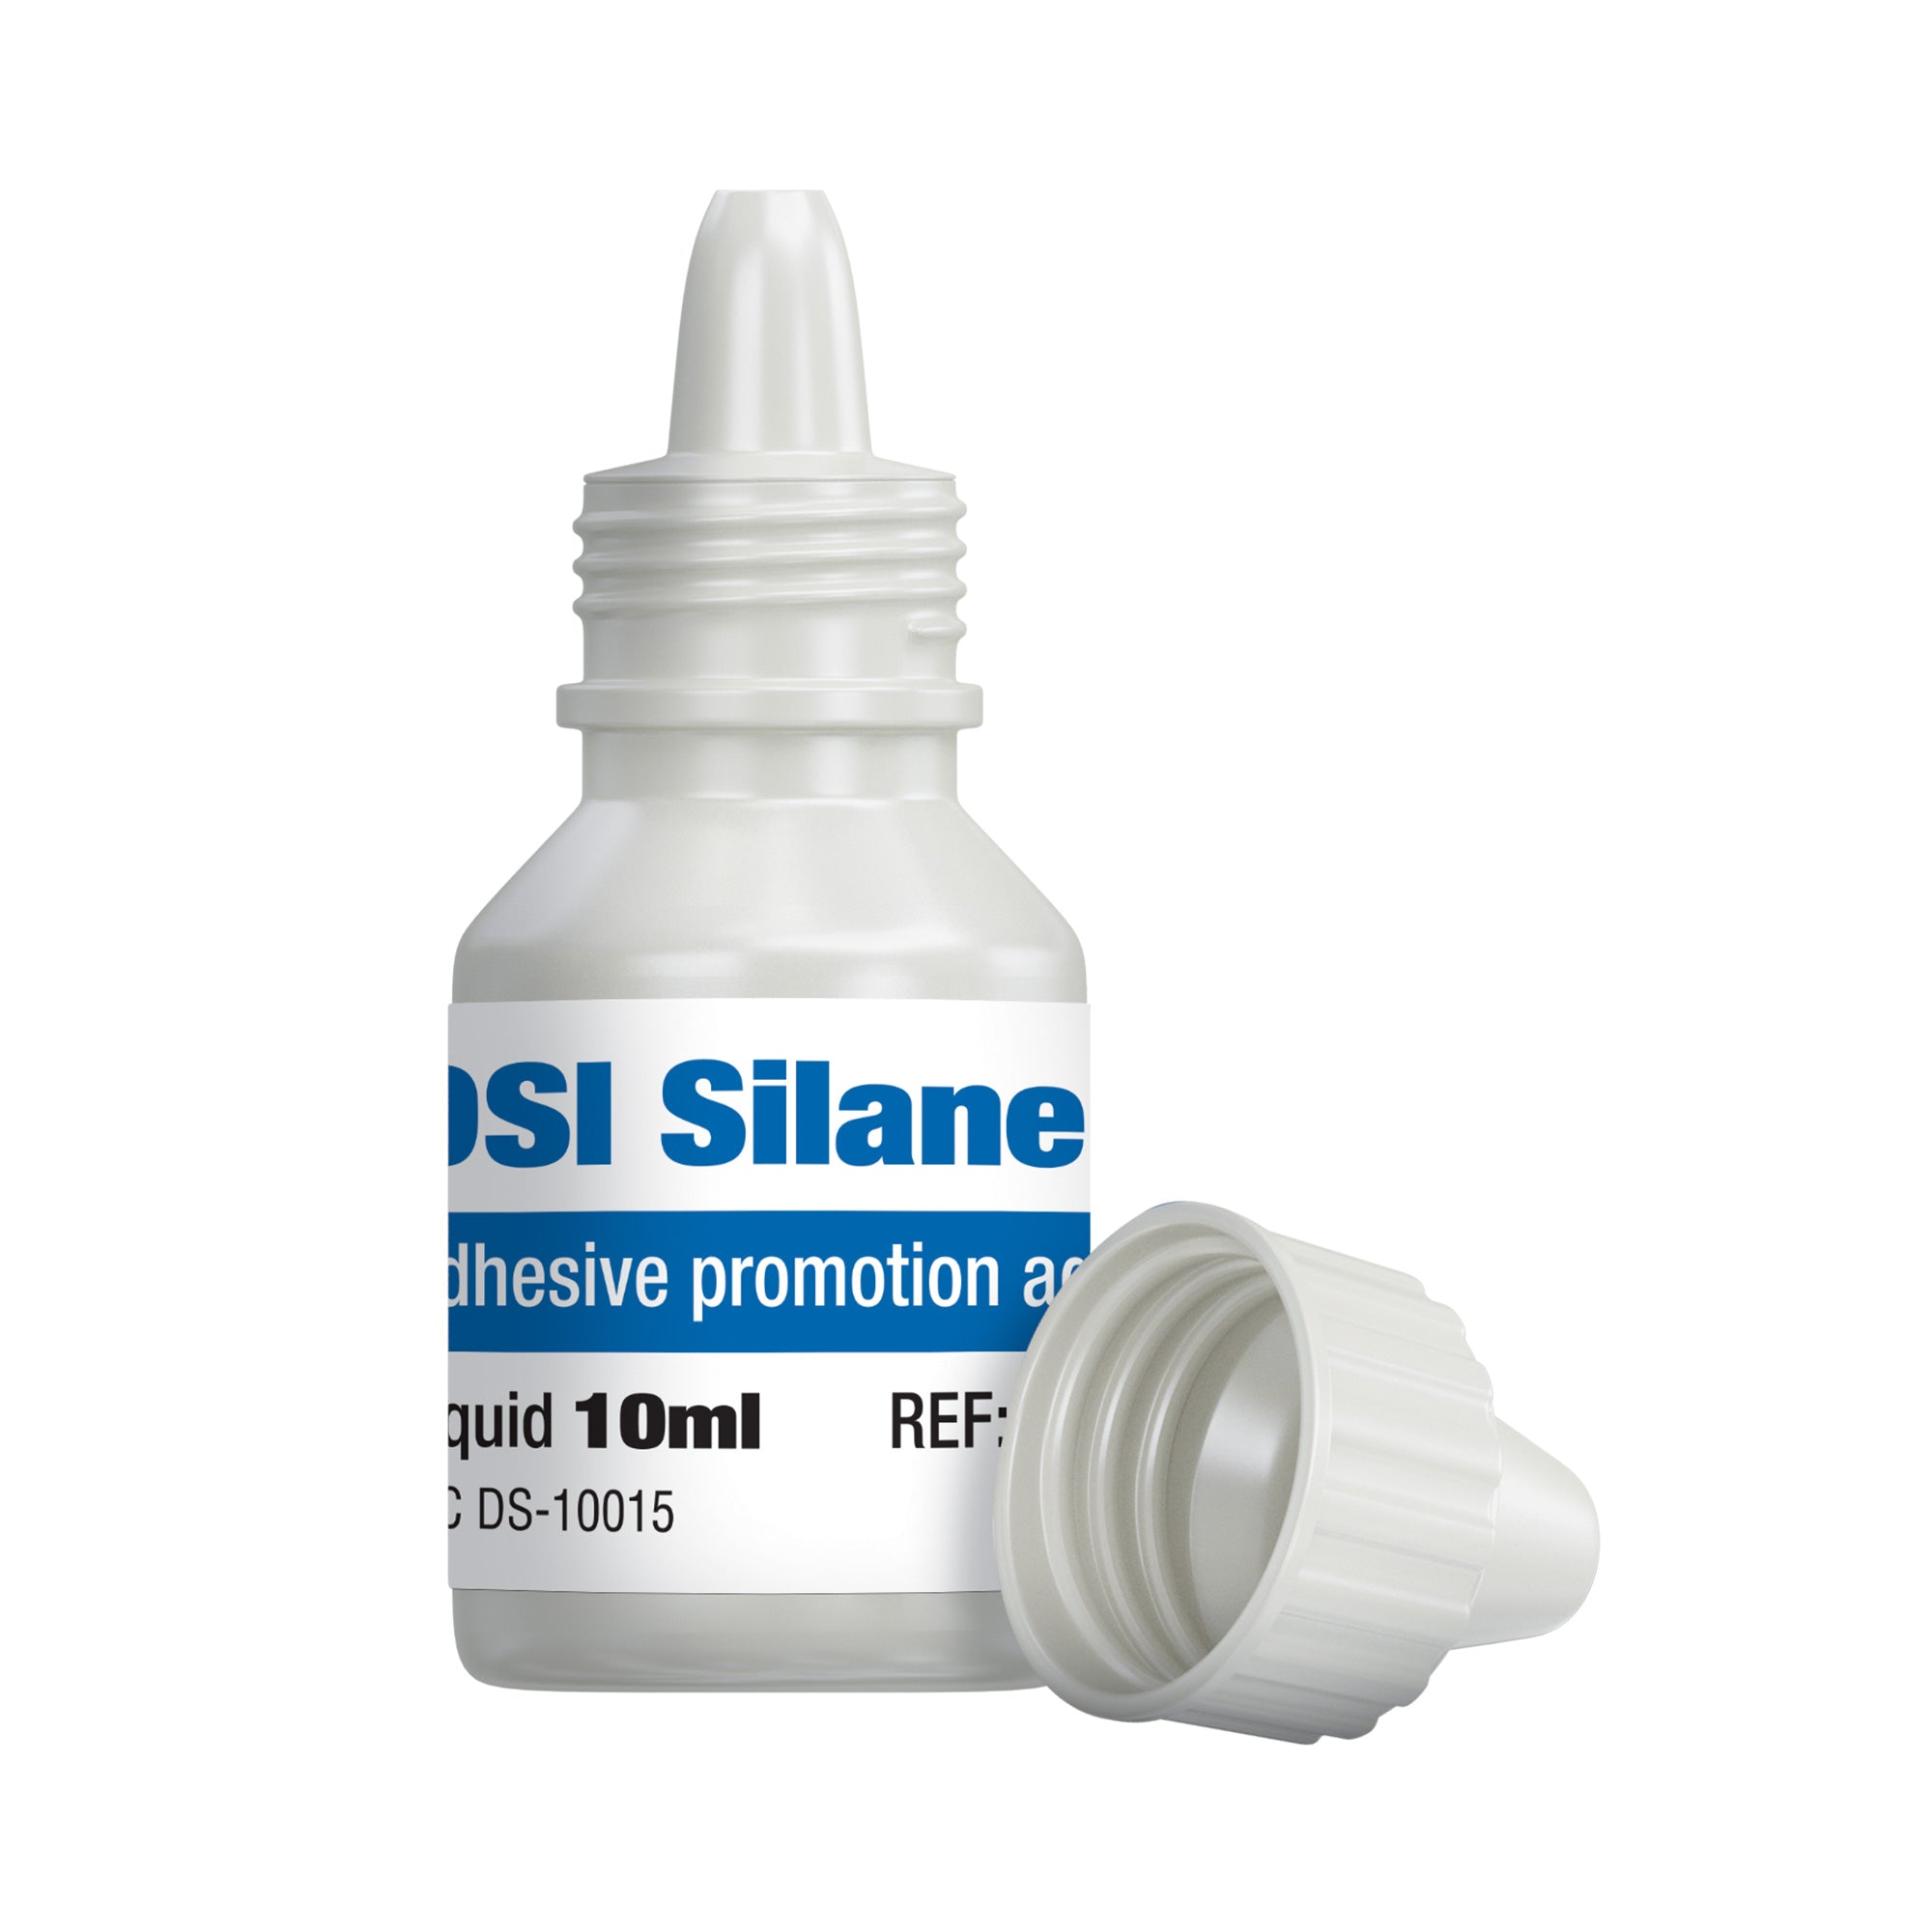 DSI Silane Dental Primer Coupling Agent For Porcelain Bonding 10ml Bottle